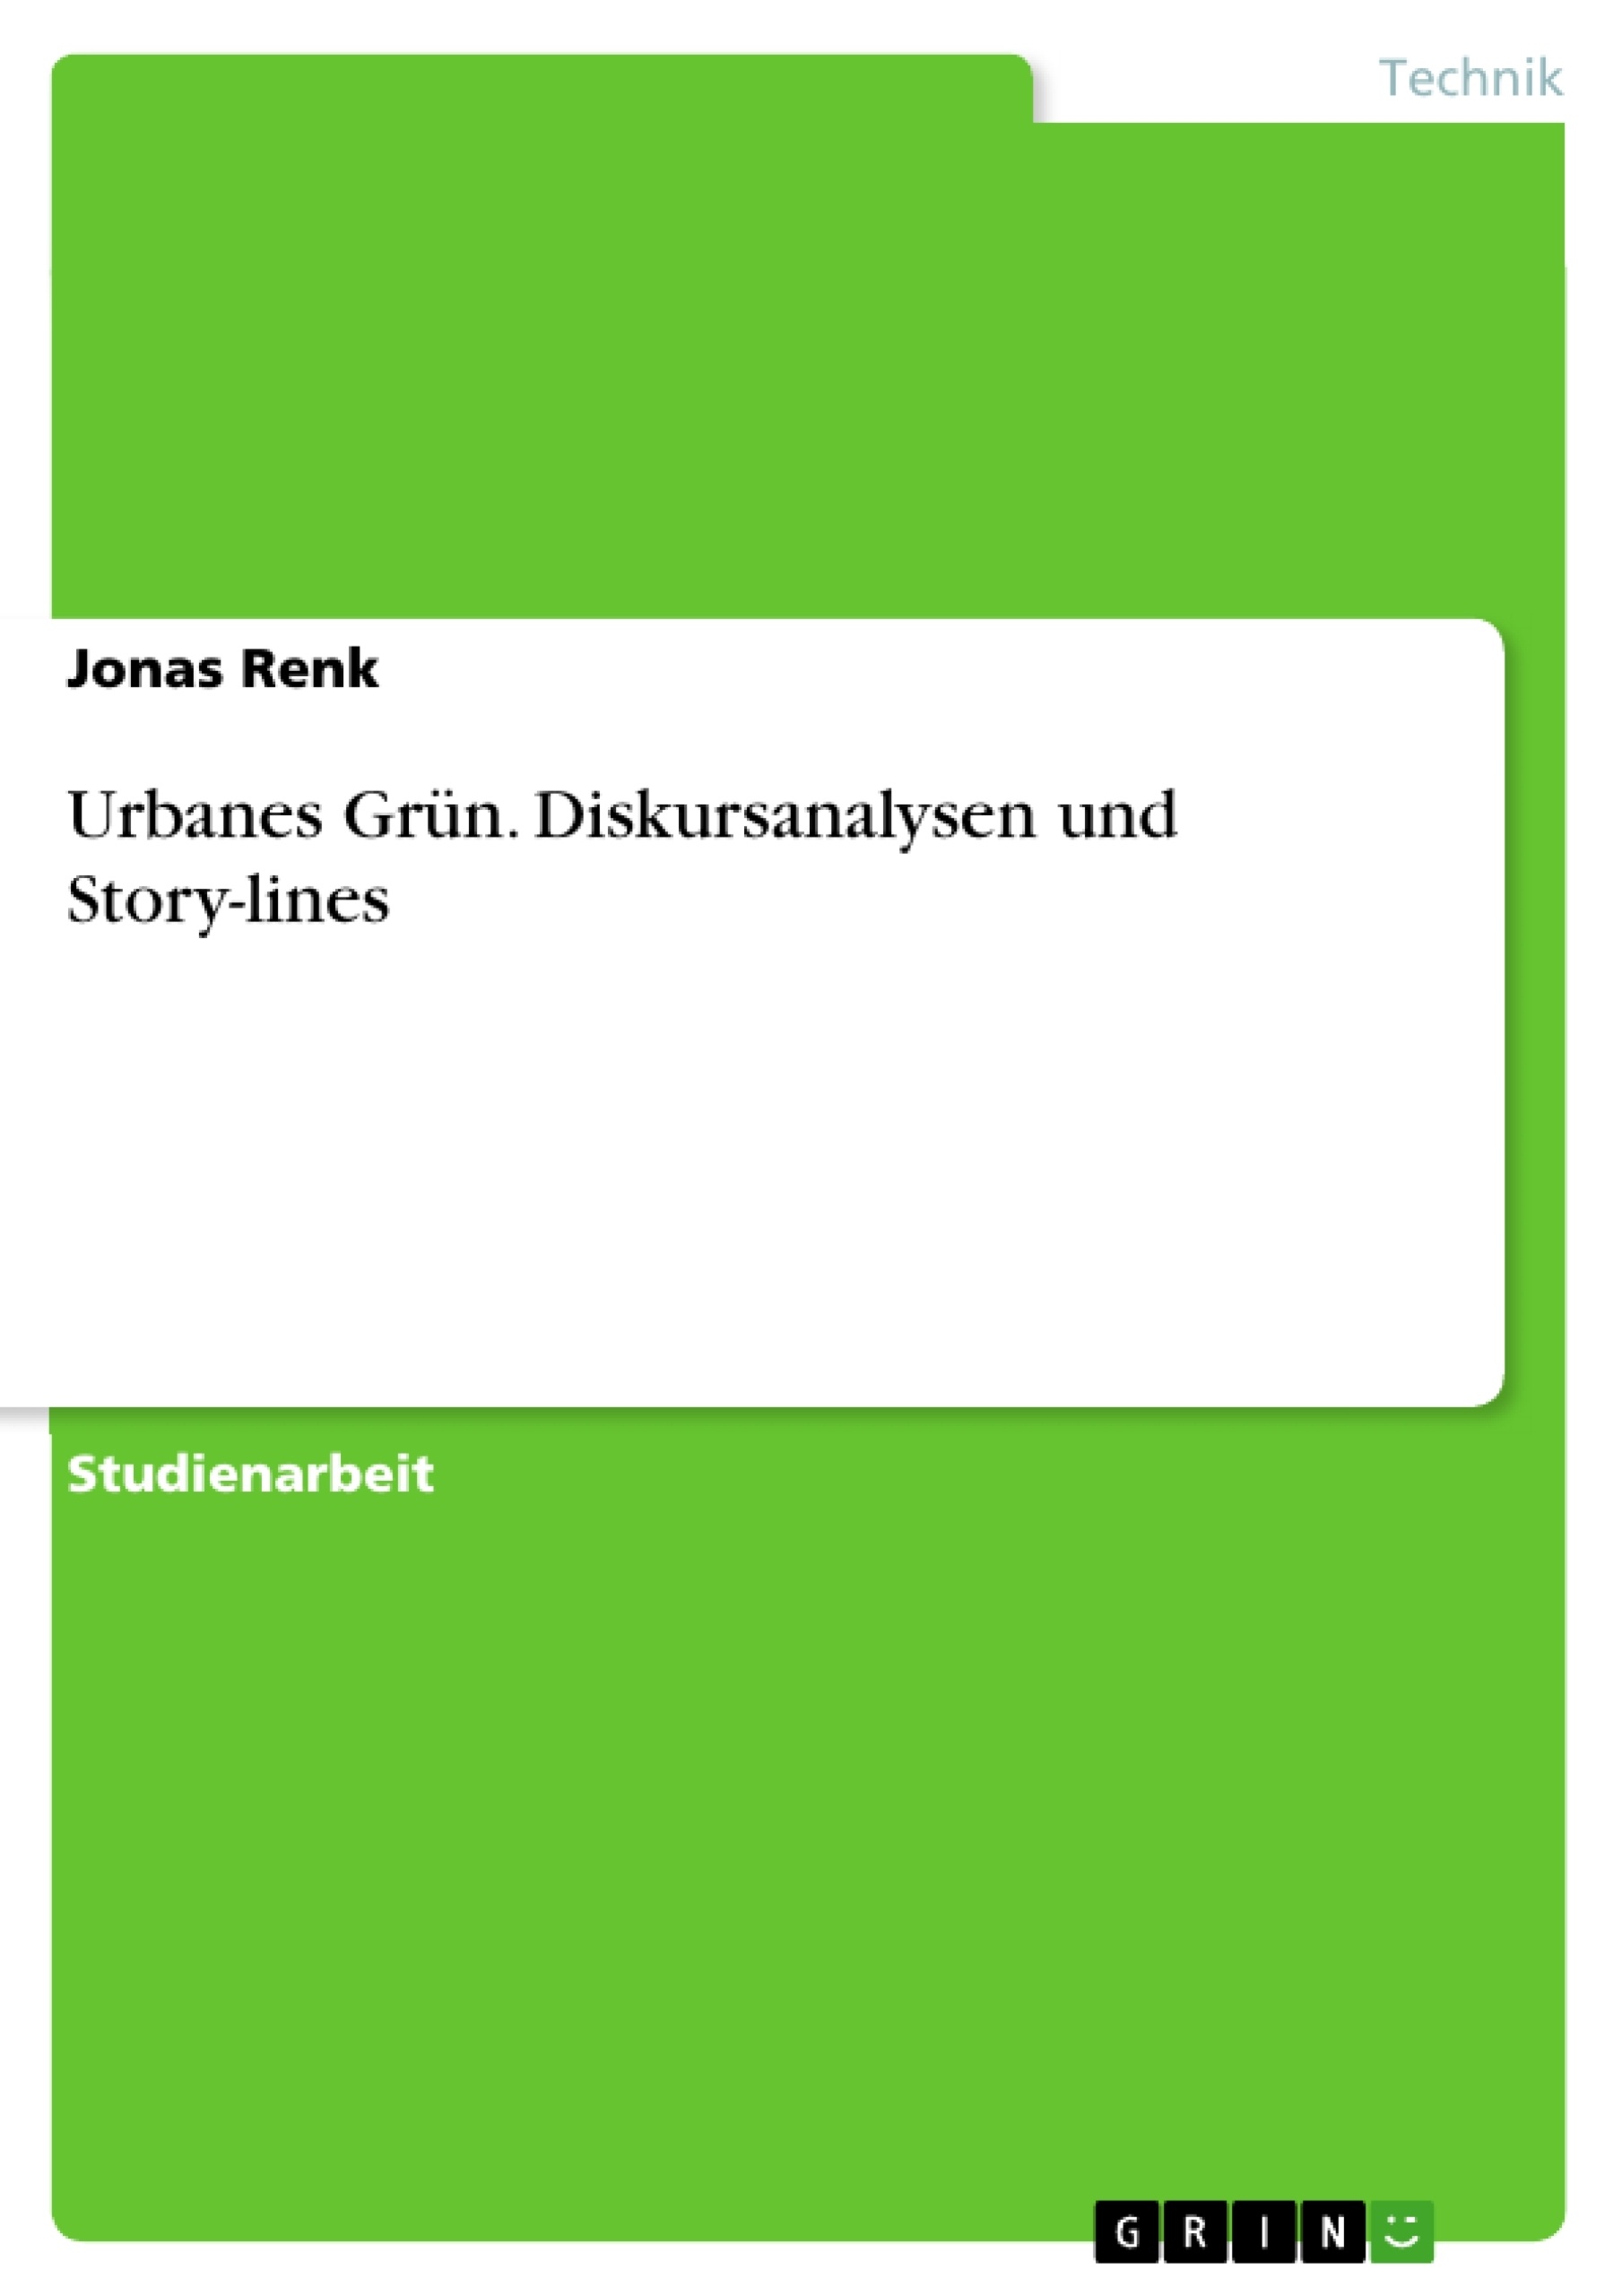 Title: Urbanes Grün. Diskursanalysen und Story-lines